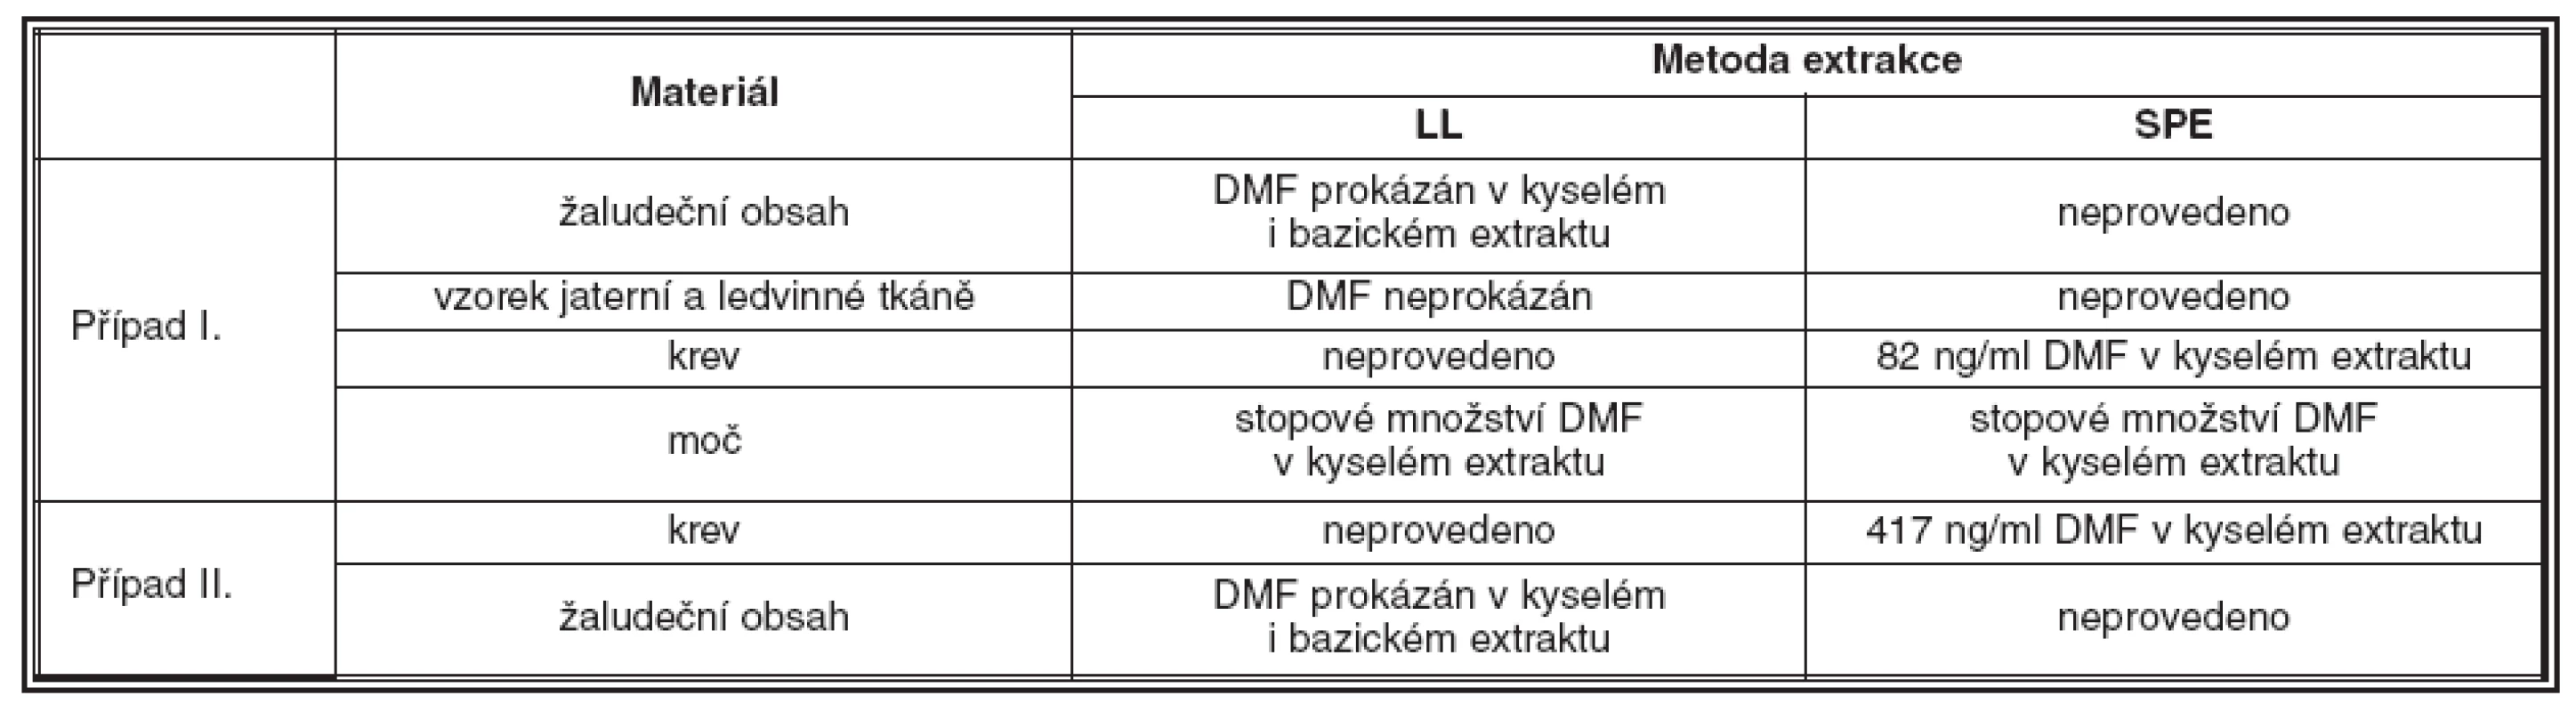 Sumární tabulka výsledků analýzy sekčního materiálu z prvního i druhého případu sebevražedné intoxikace tisem červeným